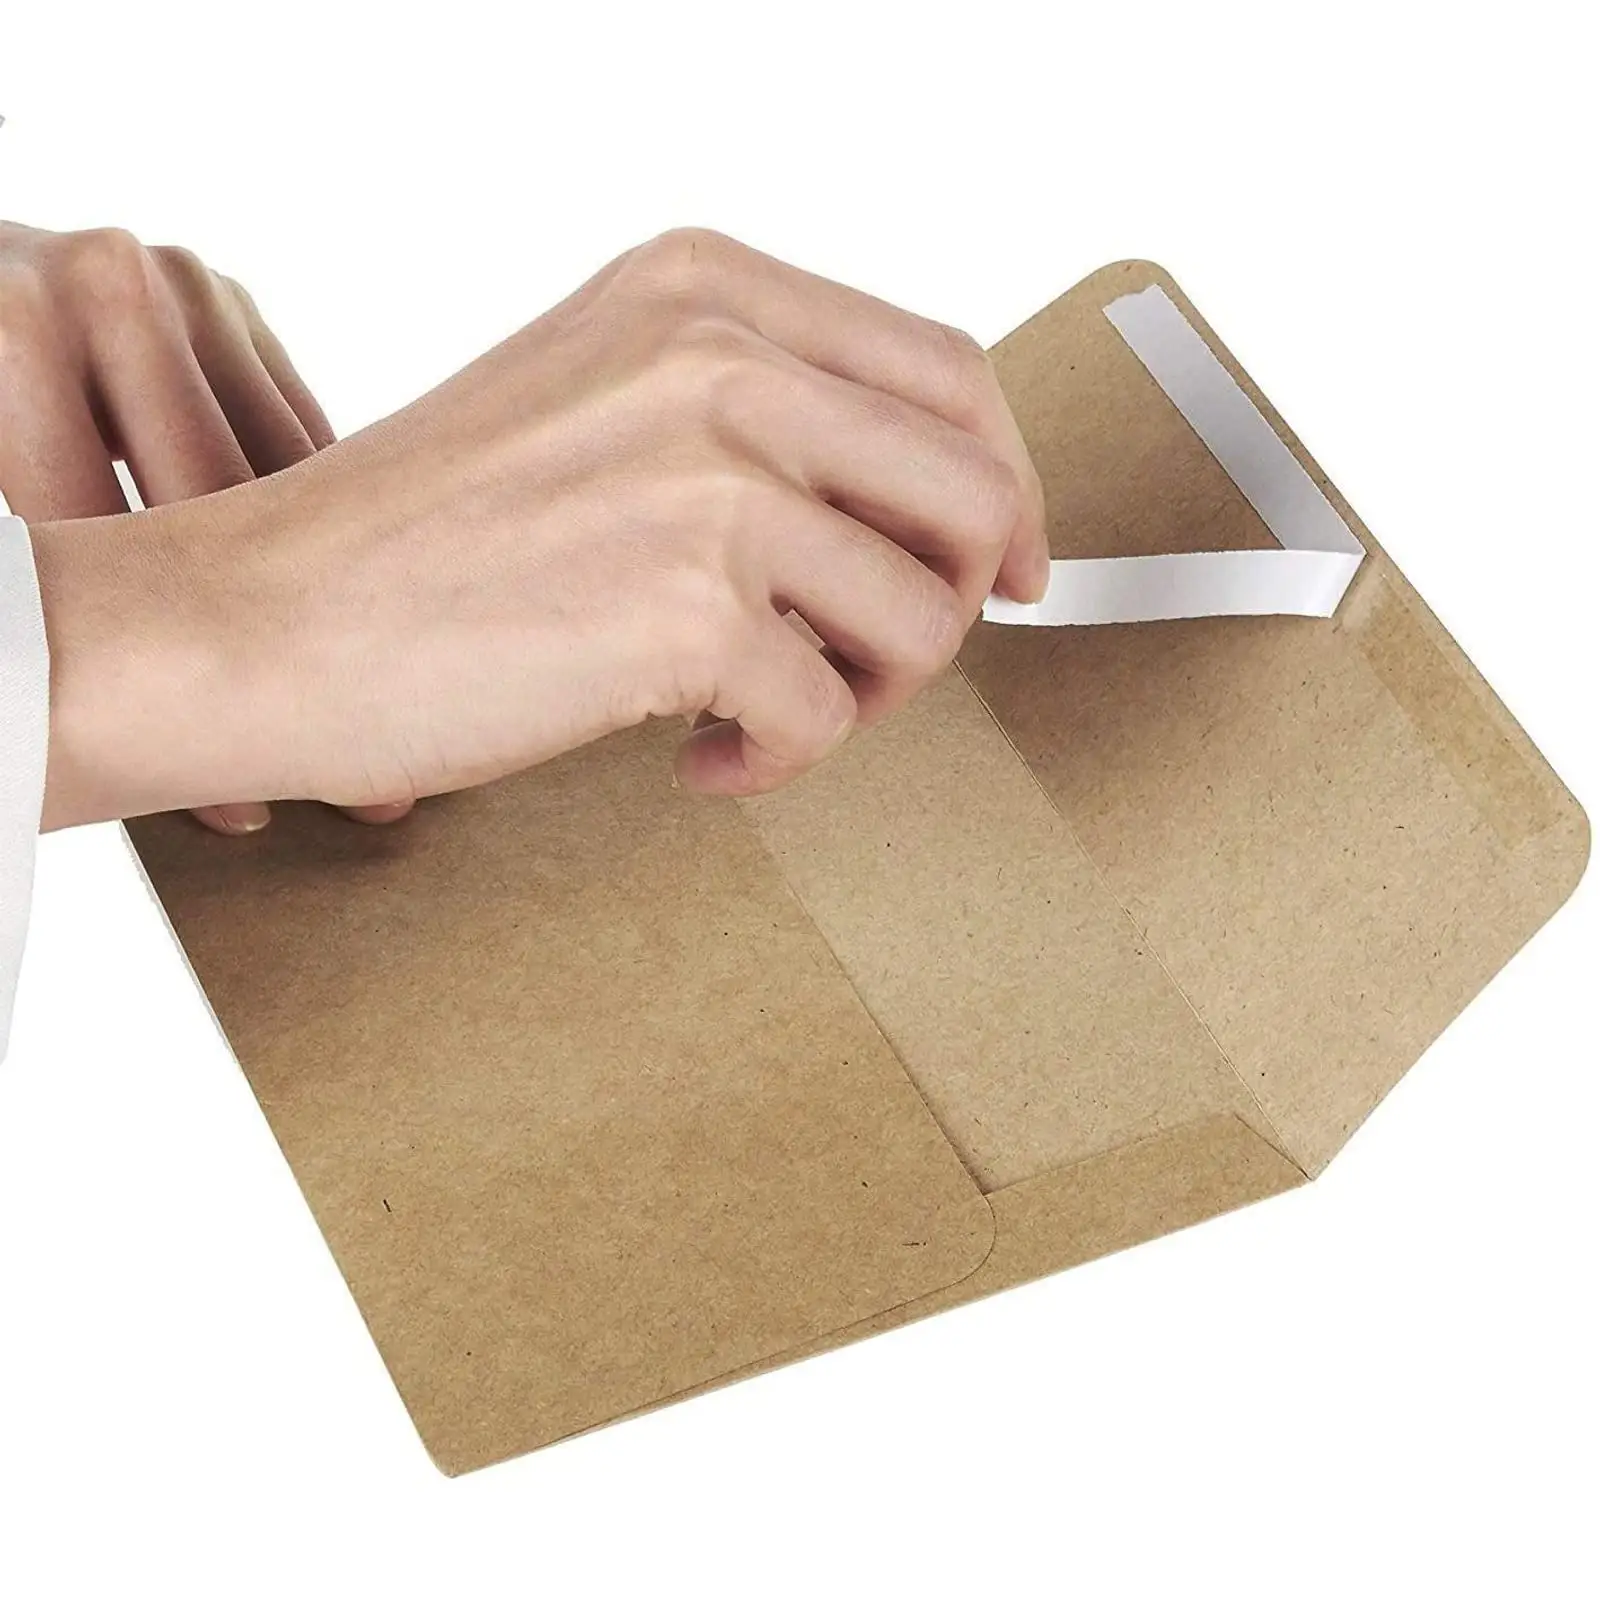 2022สไตล์ใหม่กระดาษซองจดหมายผลิตกล่องของขวัญพลาสติกบัตรซองจดหมายพิมพ์ซองจดหมายสีแดงพิมพ์